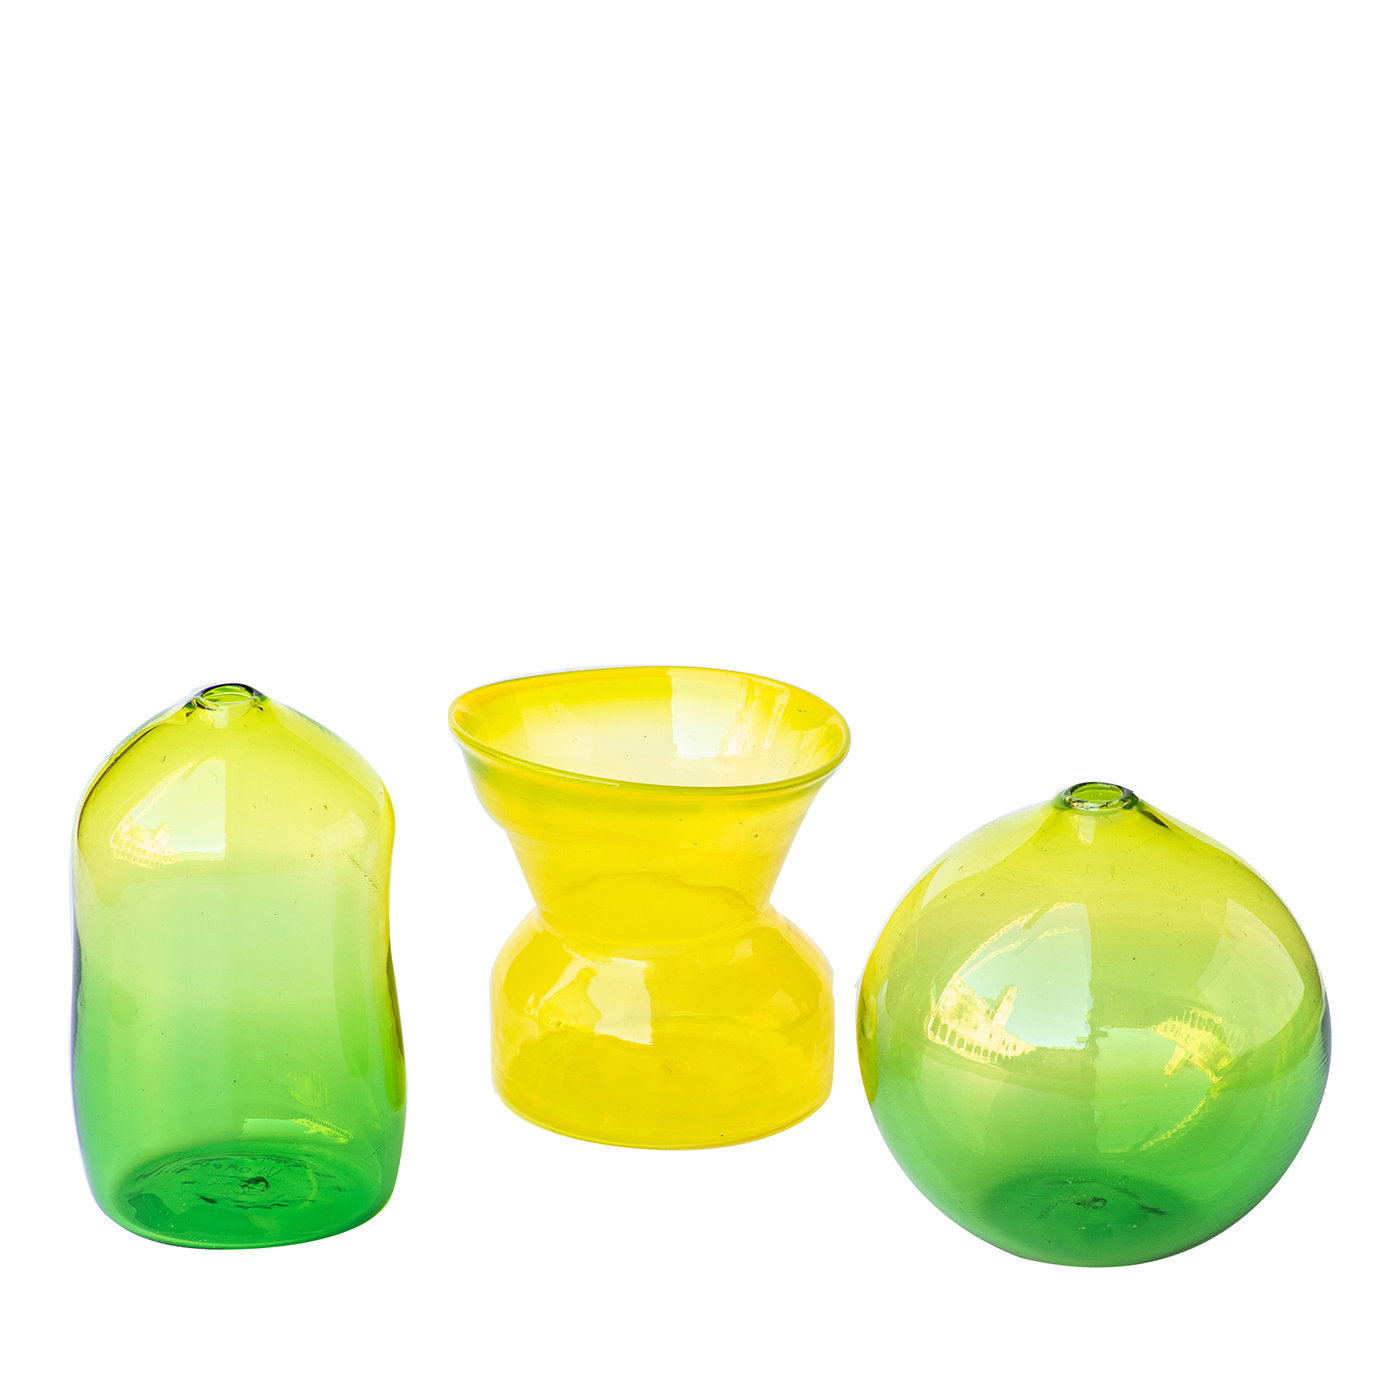 Satz von 3 gelb/grünen kleinen Vasen #2 - Hauptansicht